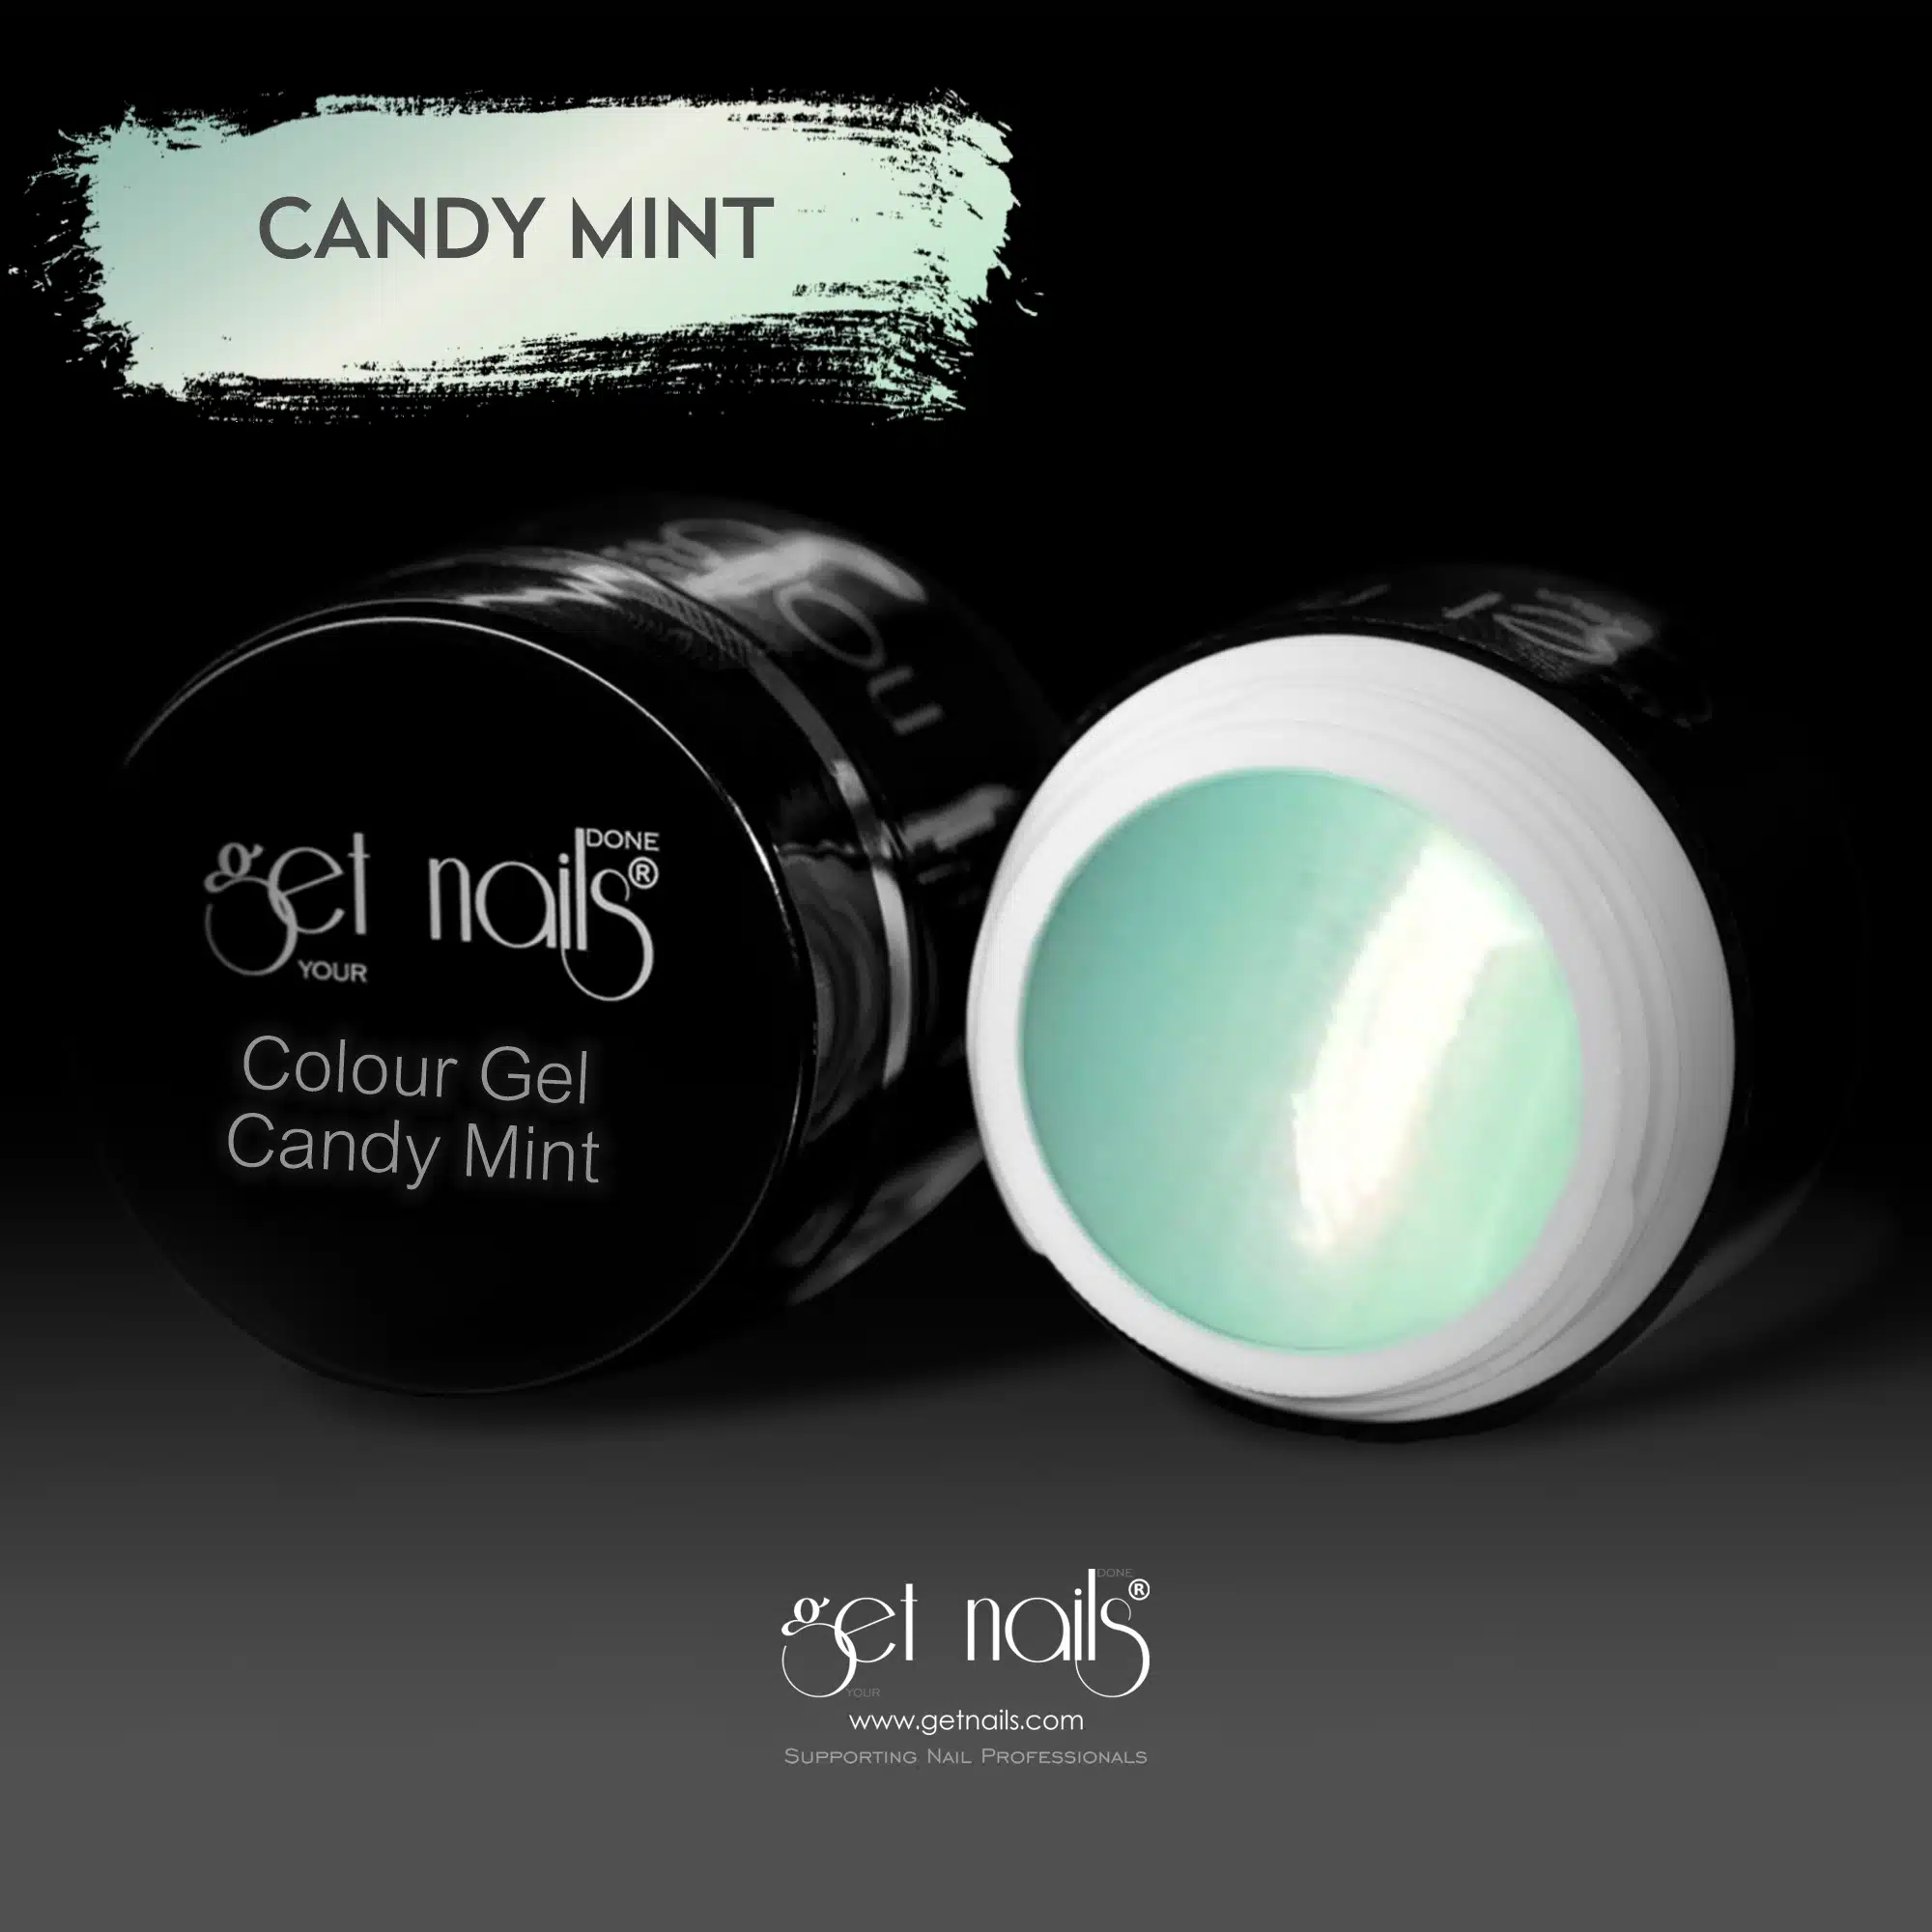 Get Nails Austria - Цветной гель Candy Mint 5g